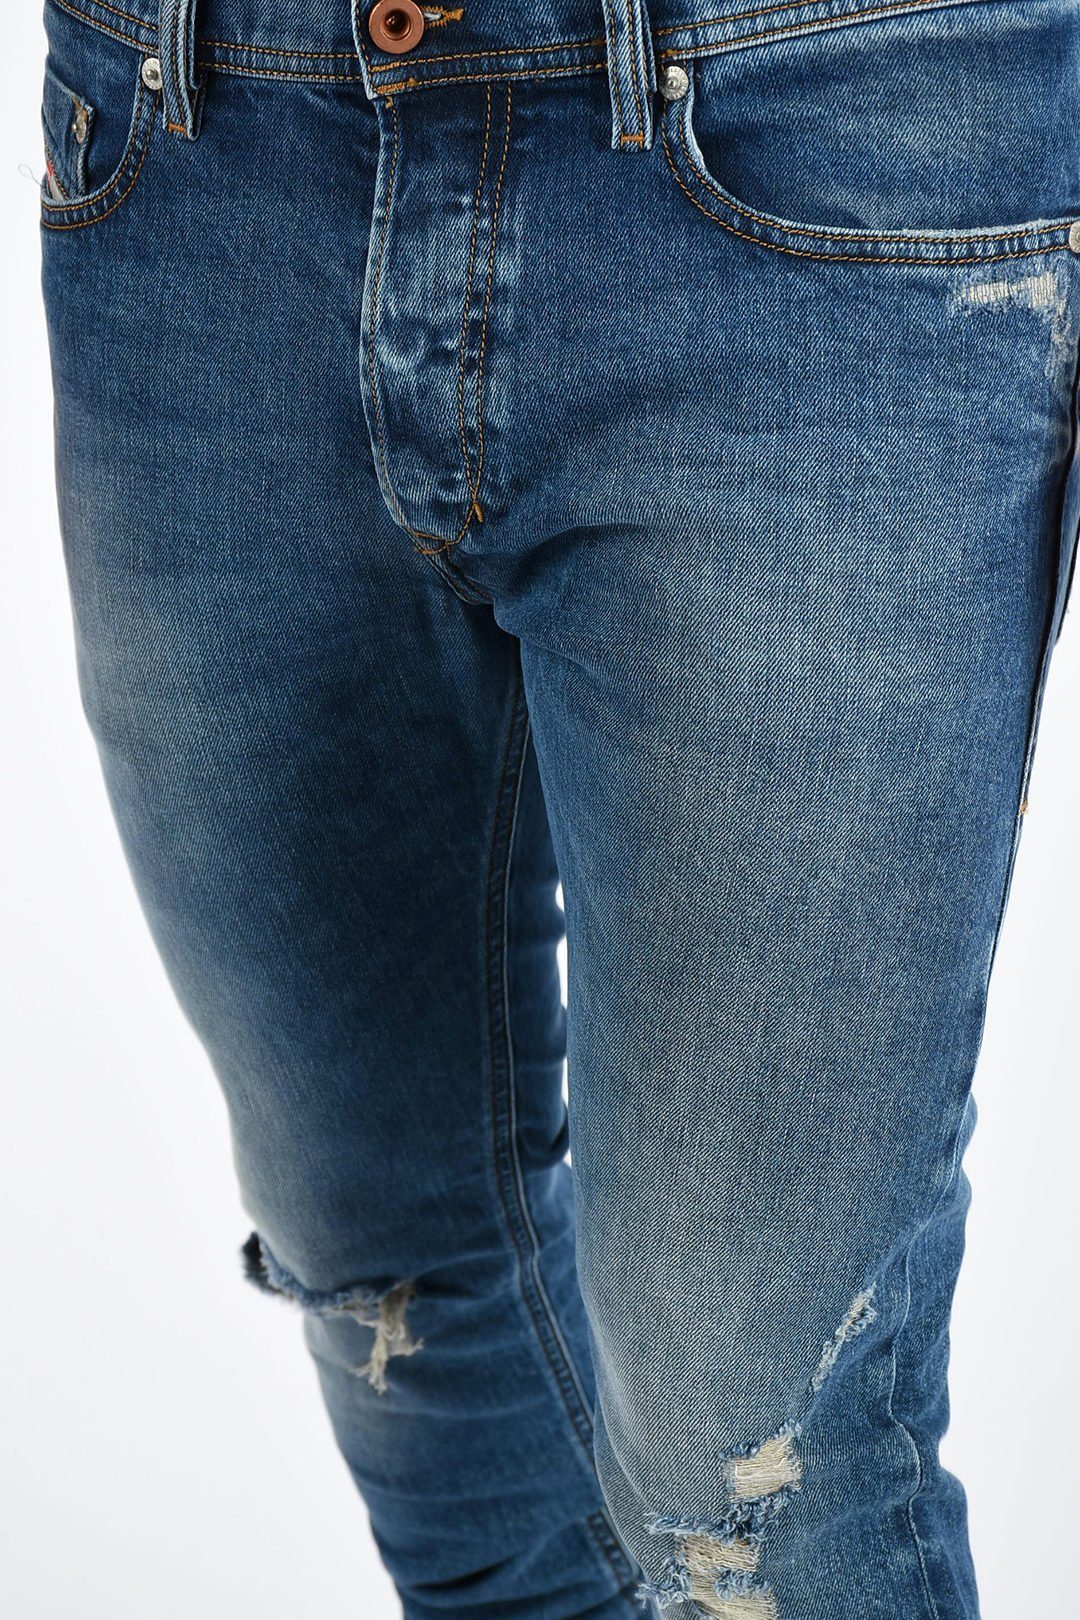 Slim-fit-Jeans Tepphar Waist, Länge: 32 Regular 084XT 5-Pocket Jeans Stretch mit Diesel Herren Style, Anteil, Diesel